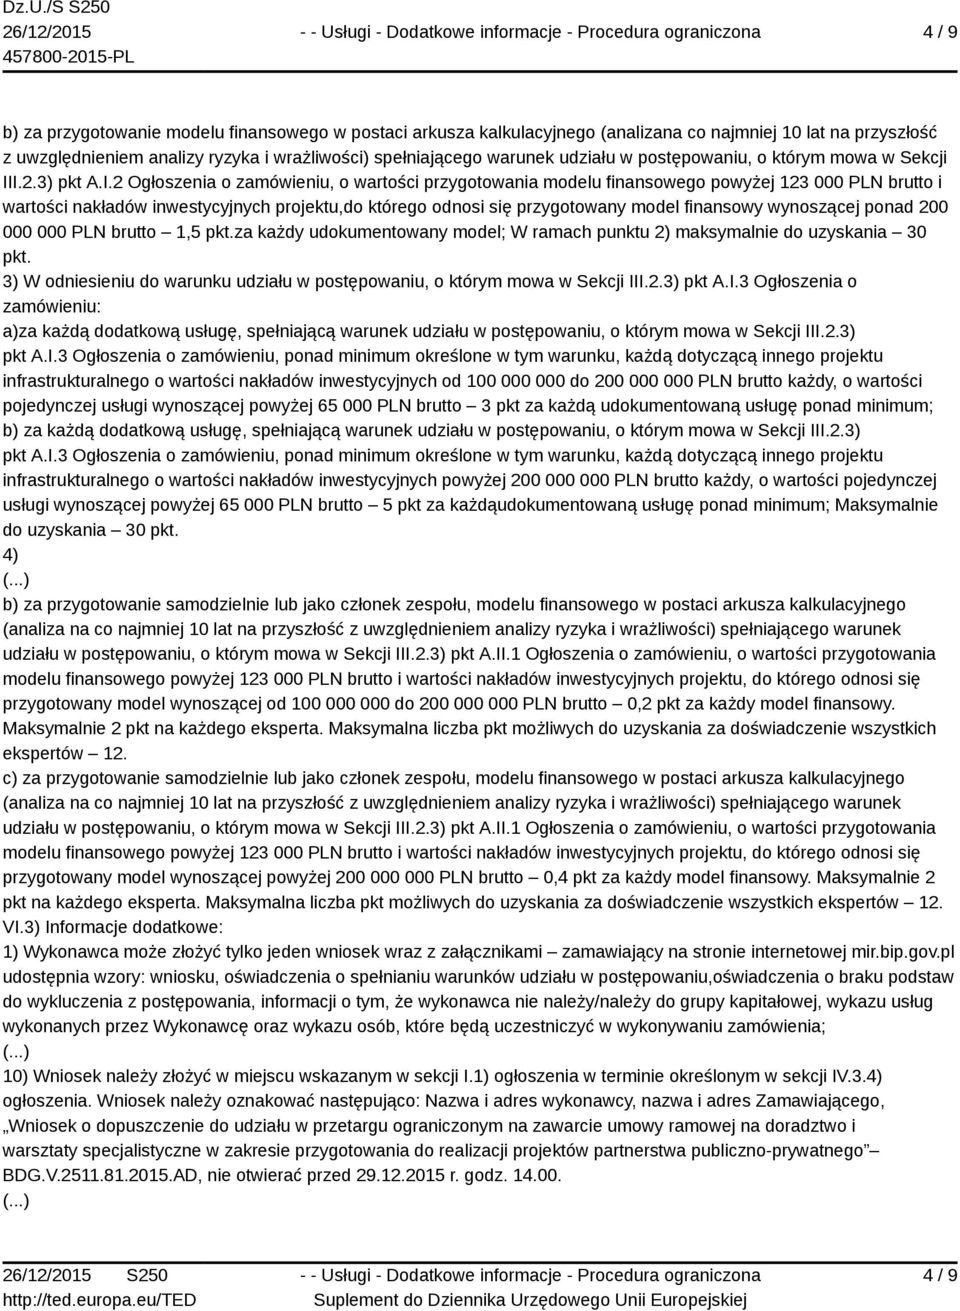 I.2.3) pkt A.I.2 Ogłoszenia o zamówieniu, o wartości przygotowania modelu finansowego powyżej 123 000 PLN brutto i wartości nakładów inwestycyjnych projektu,do którego odnosi się przygotowany model